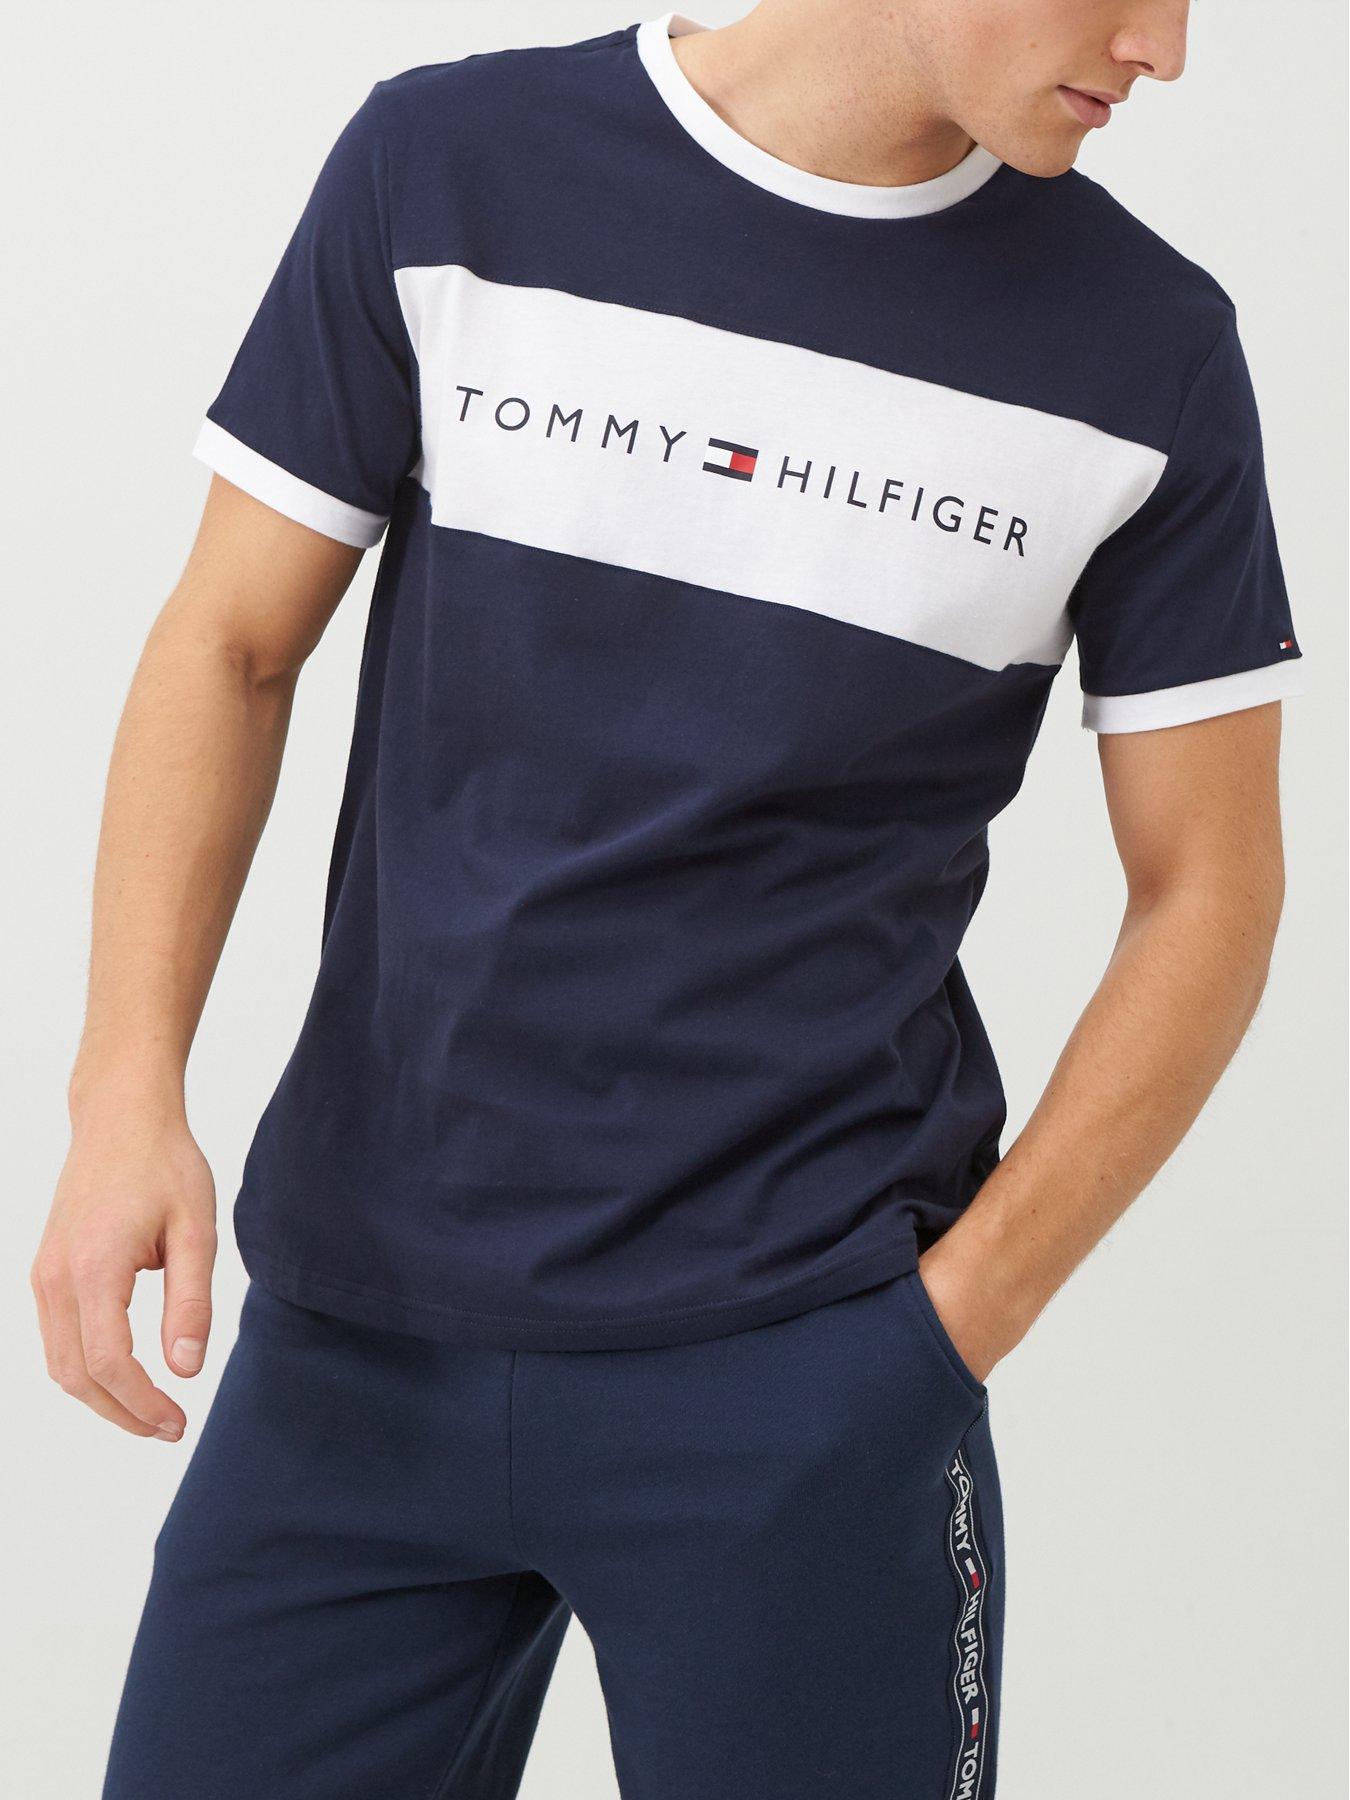 Blue | Tommy hilfiger Nightwear & loungewear | Men Ireland